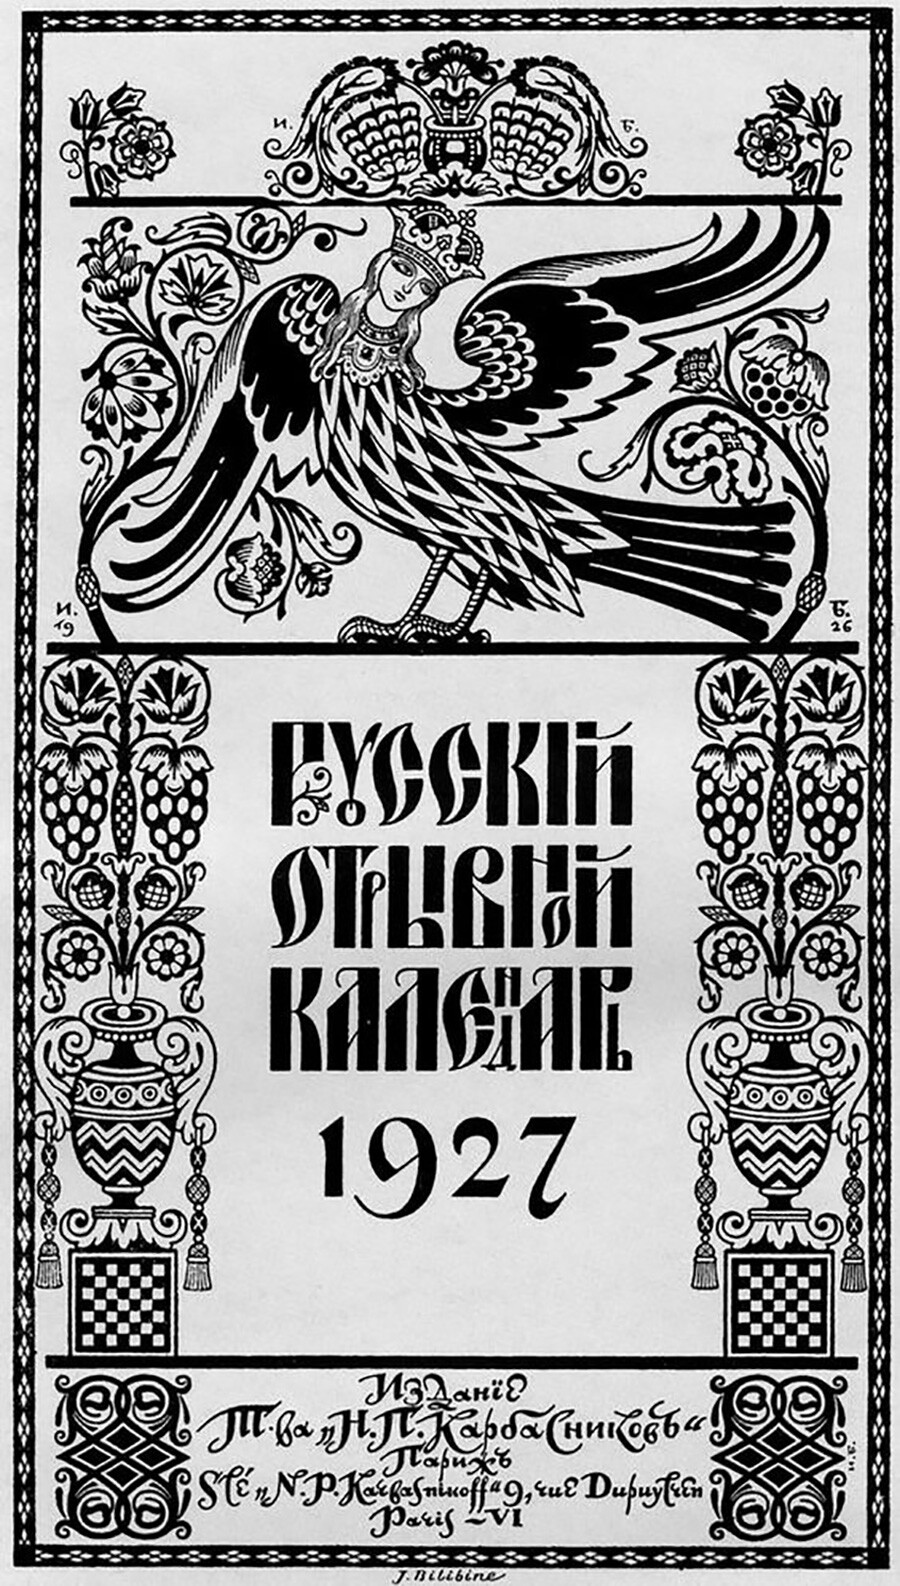 Kalender Rusia untuk tahun 1927, I. Bilibin.